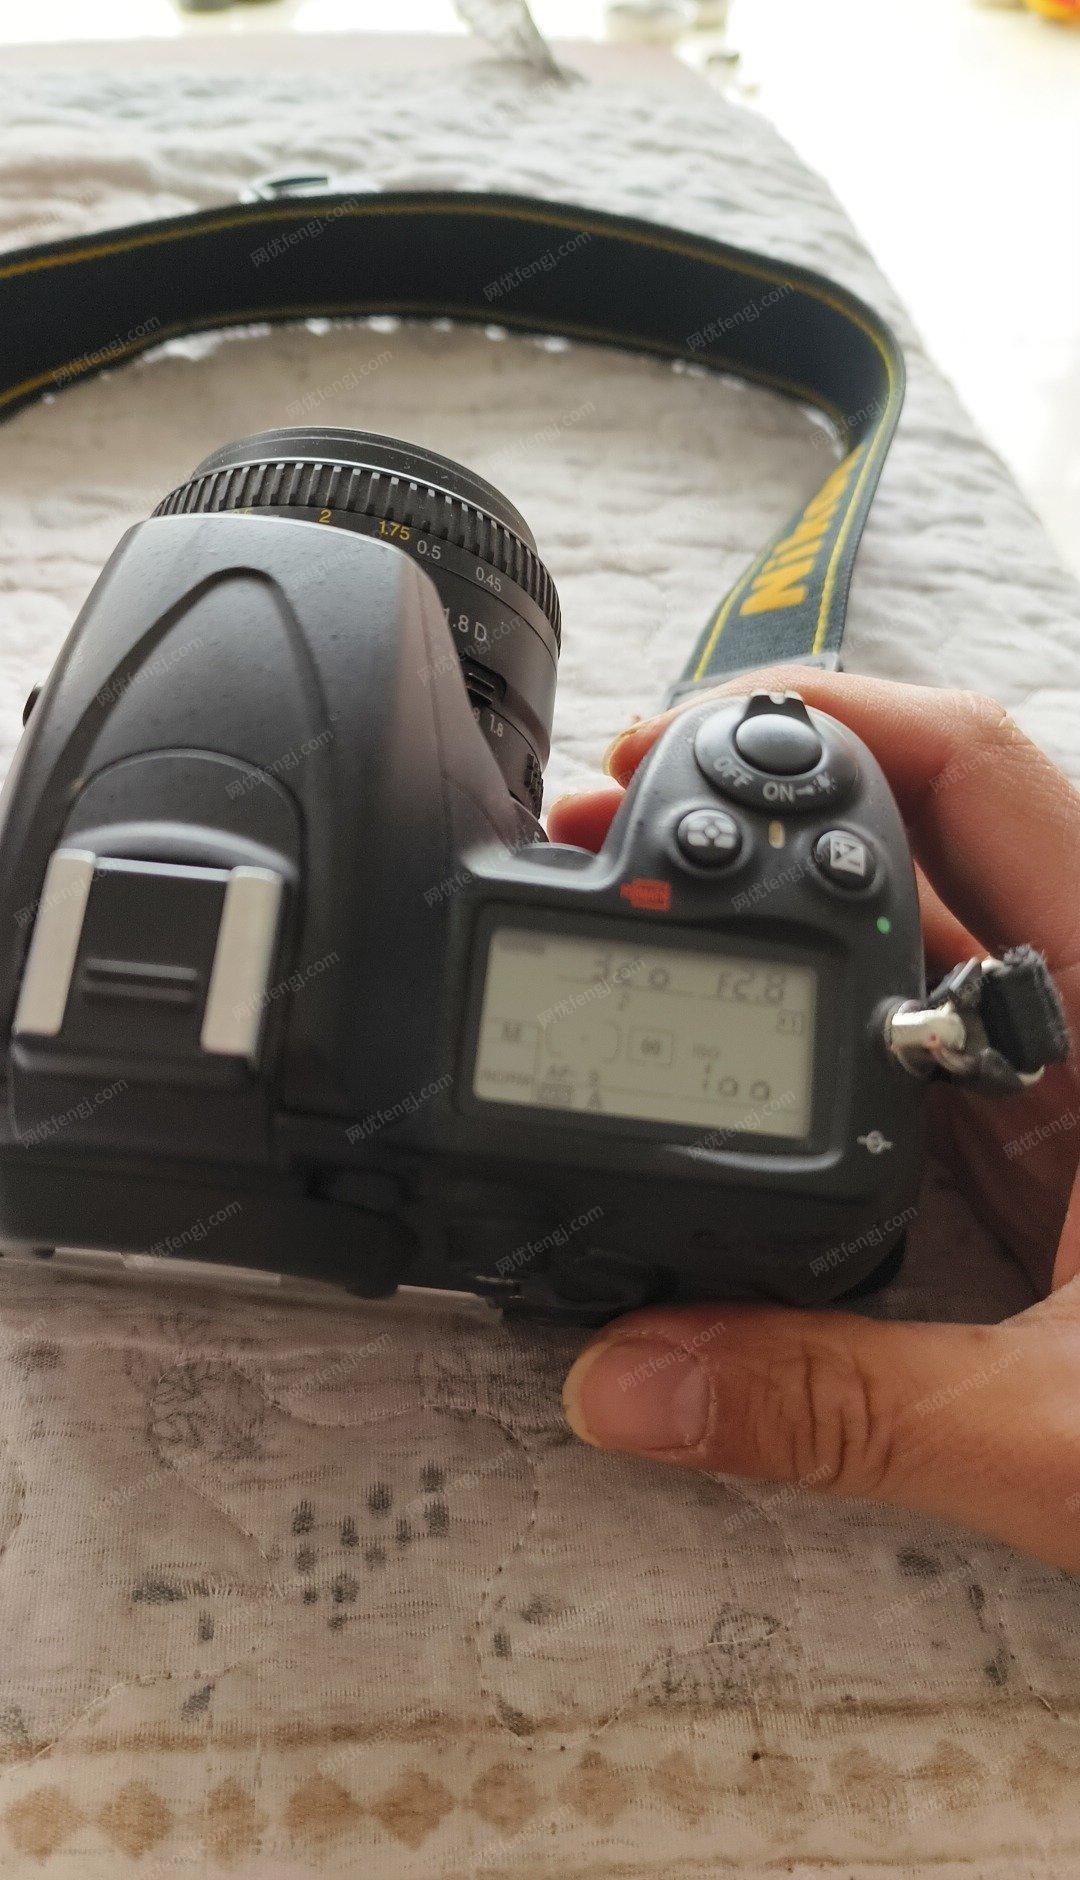 四川乐山单反相机d7000出售